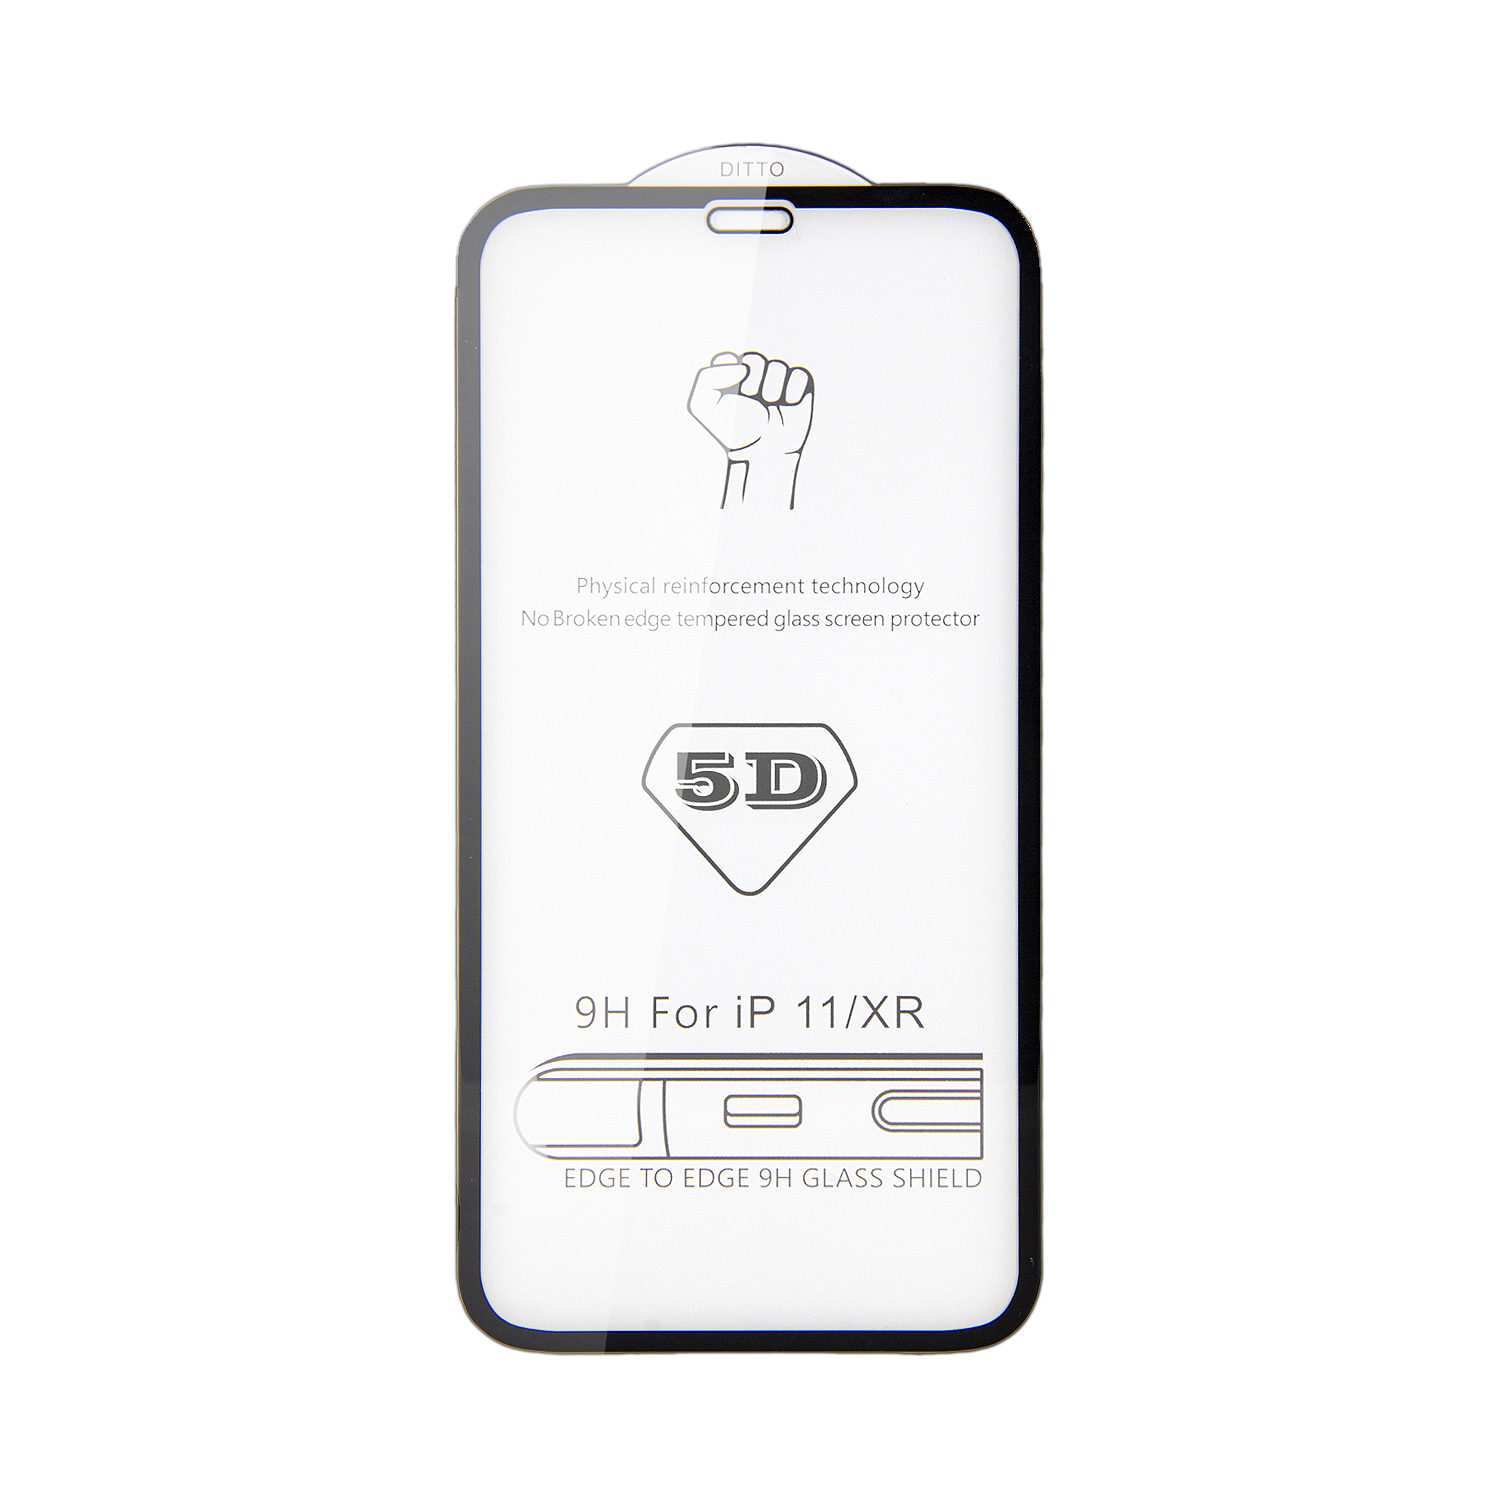 Защитное стекло iPh 11/XR 5D 0.33 mm без упаковки  (без возврата и обмена)